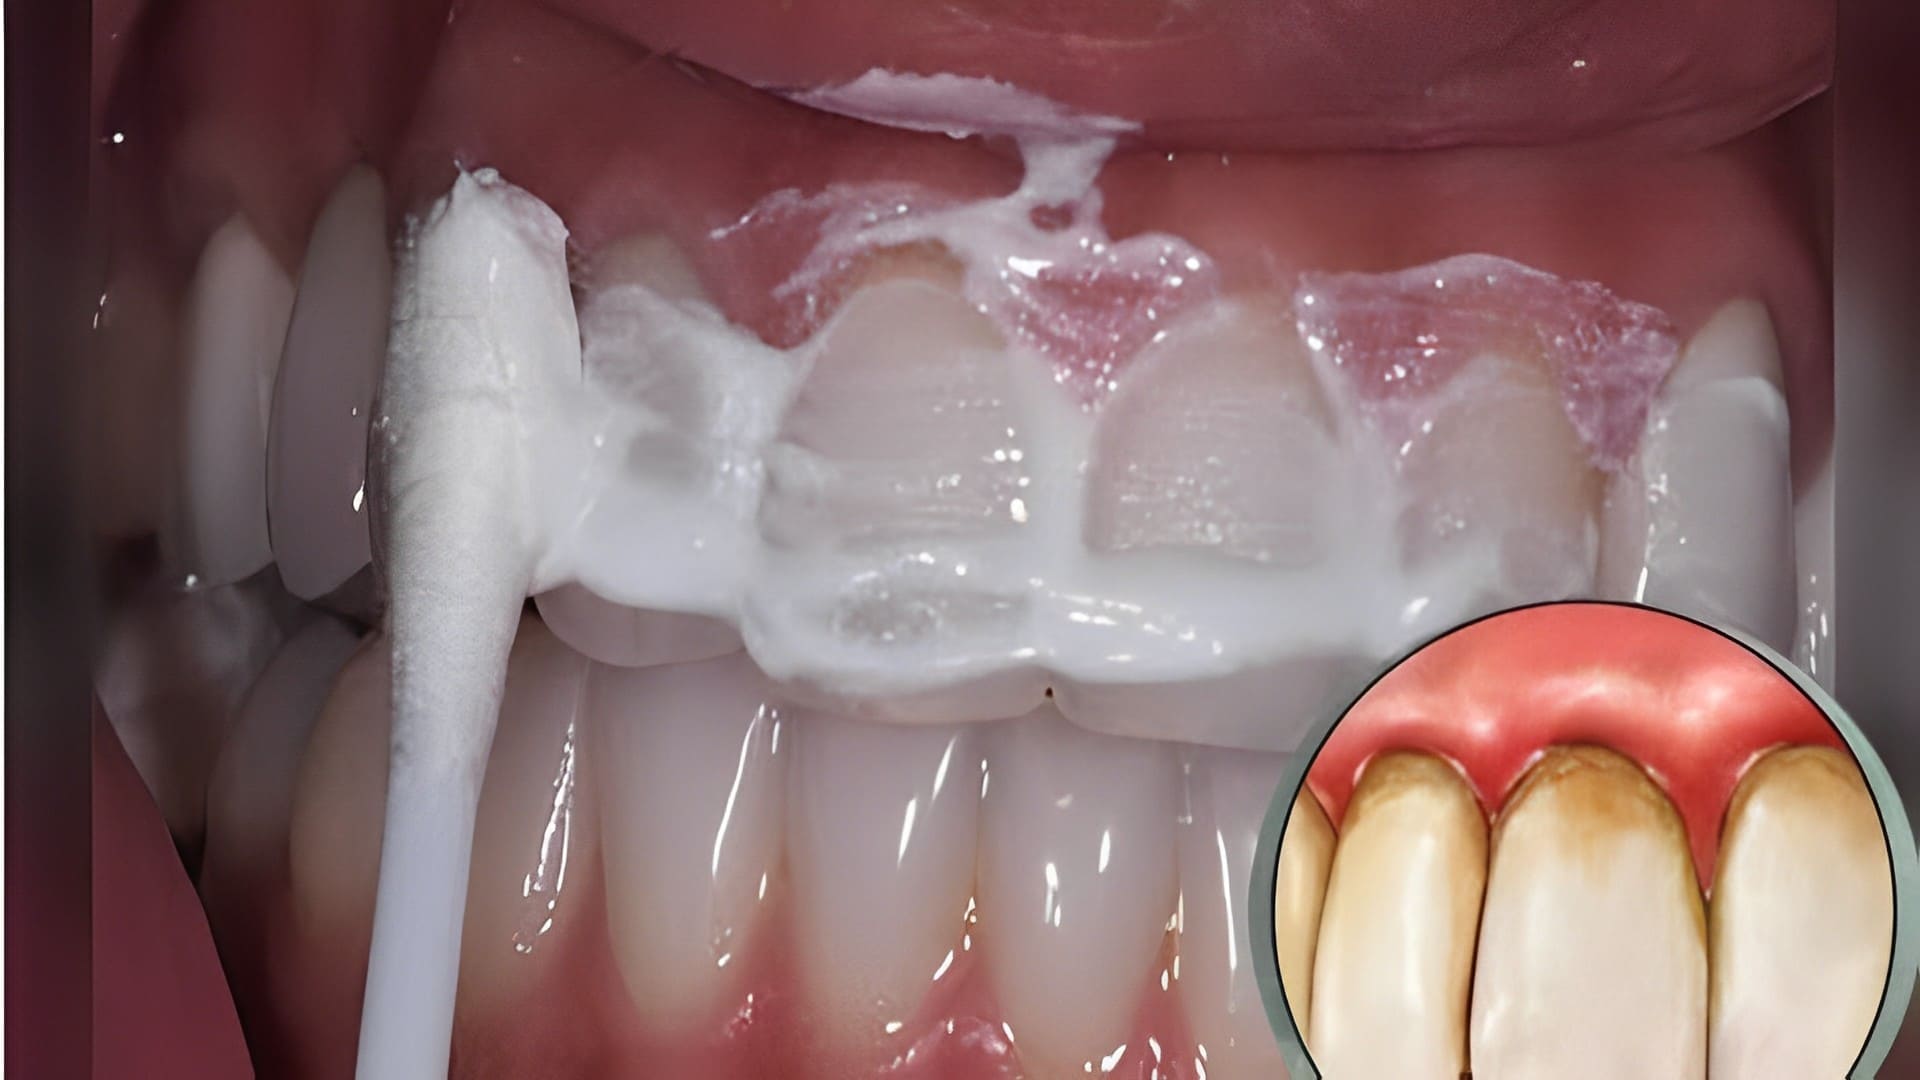 Combate la gingivitis, el sarro y blanquea tus dientes con estos remedios naturales en una semana